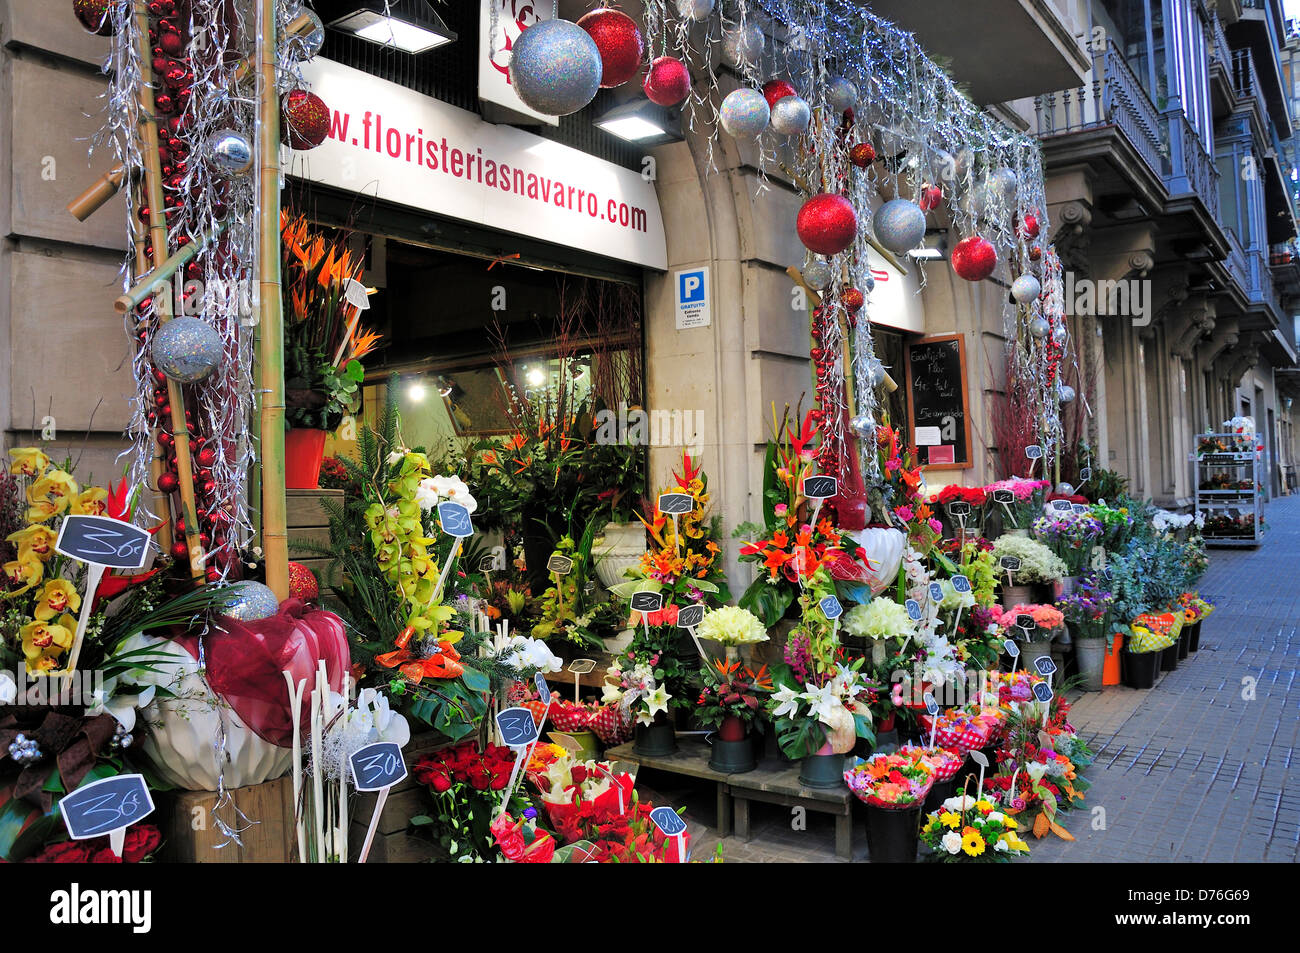 Barcelona, Catalonia, Spain. Navarro florist at Christmas Stock Photo